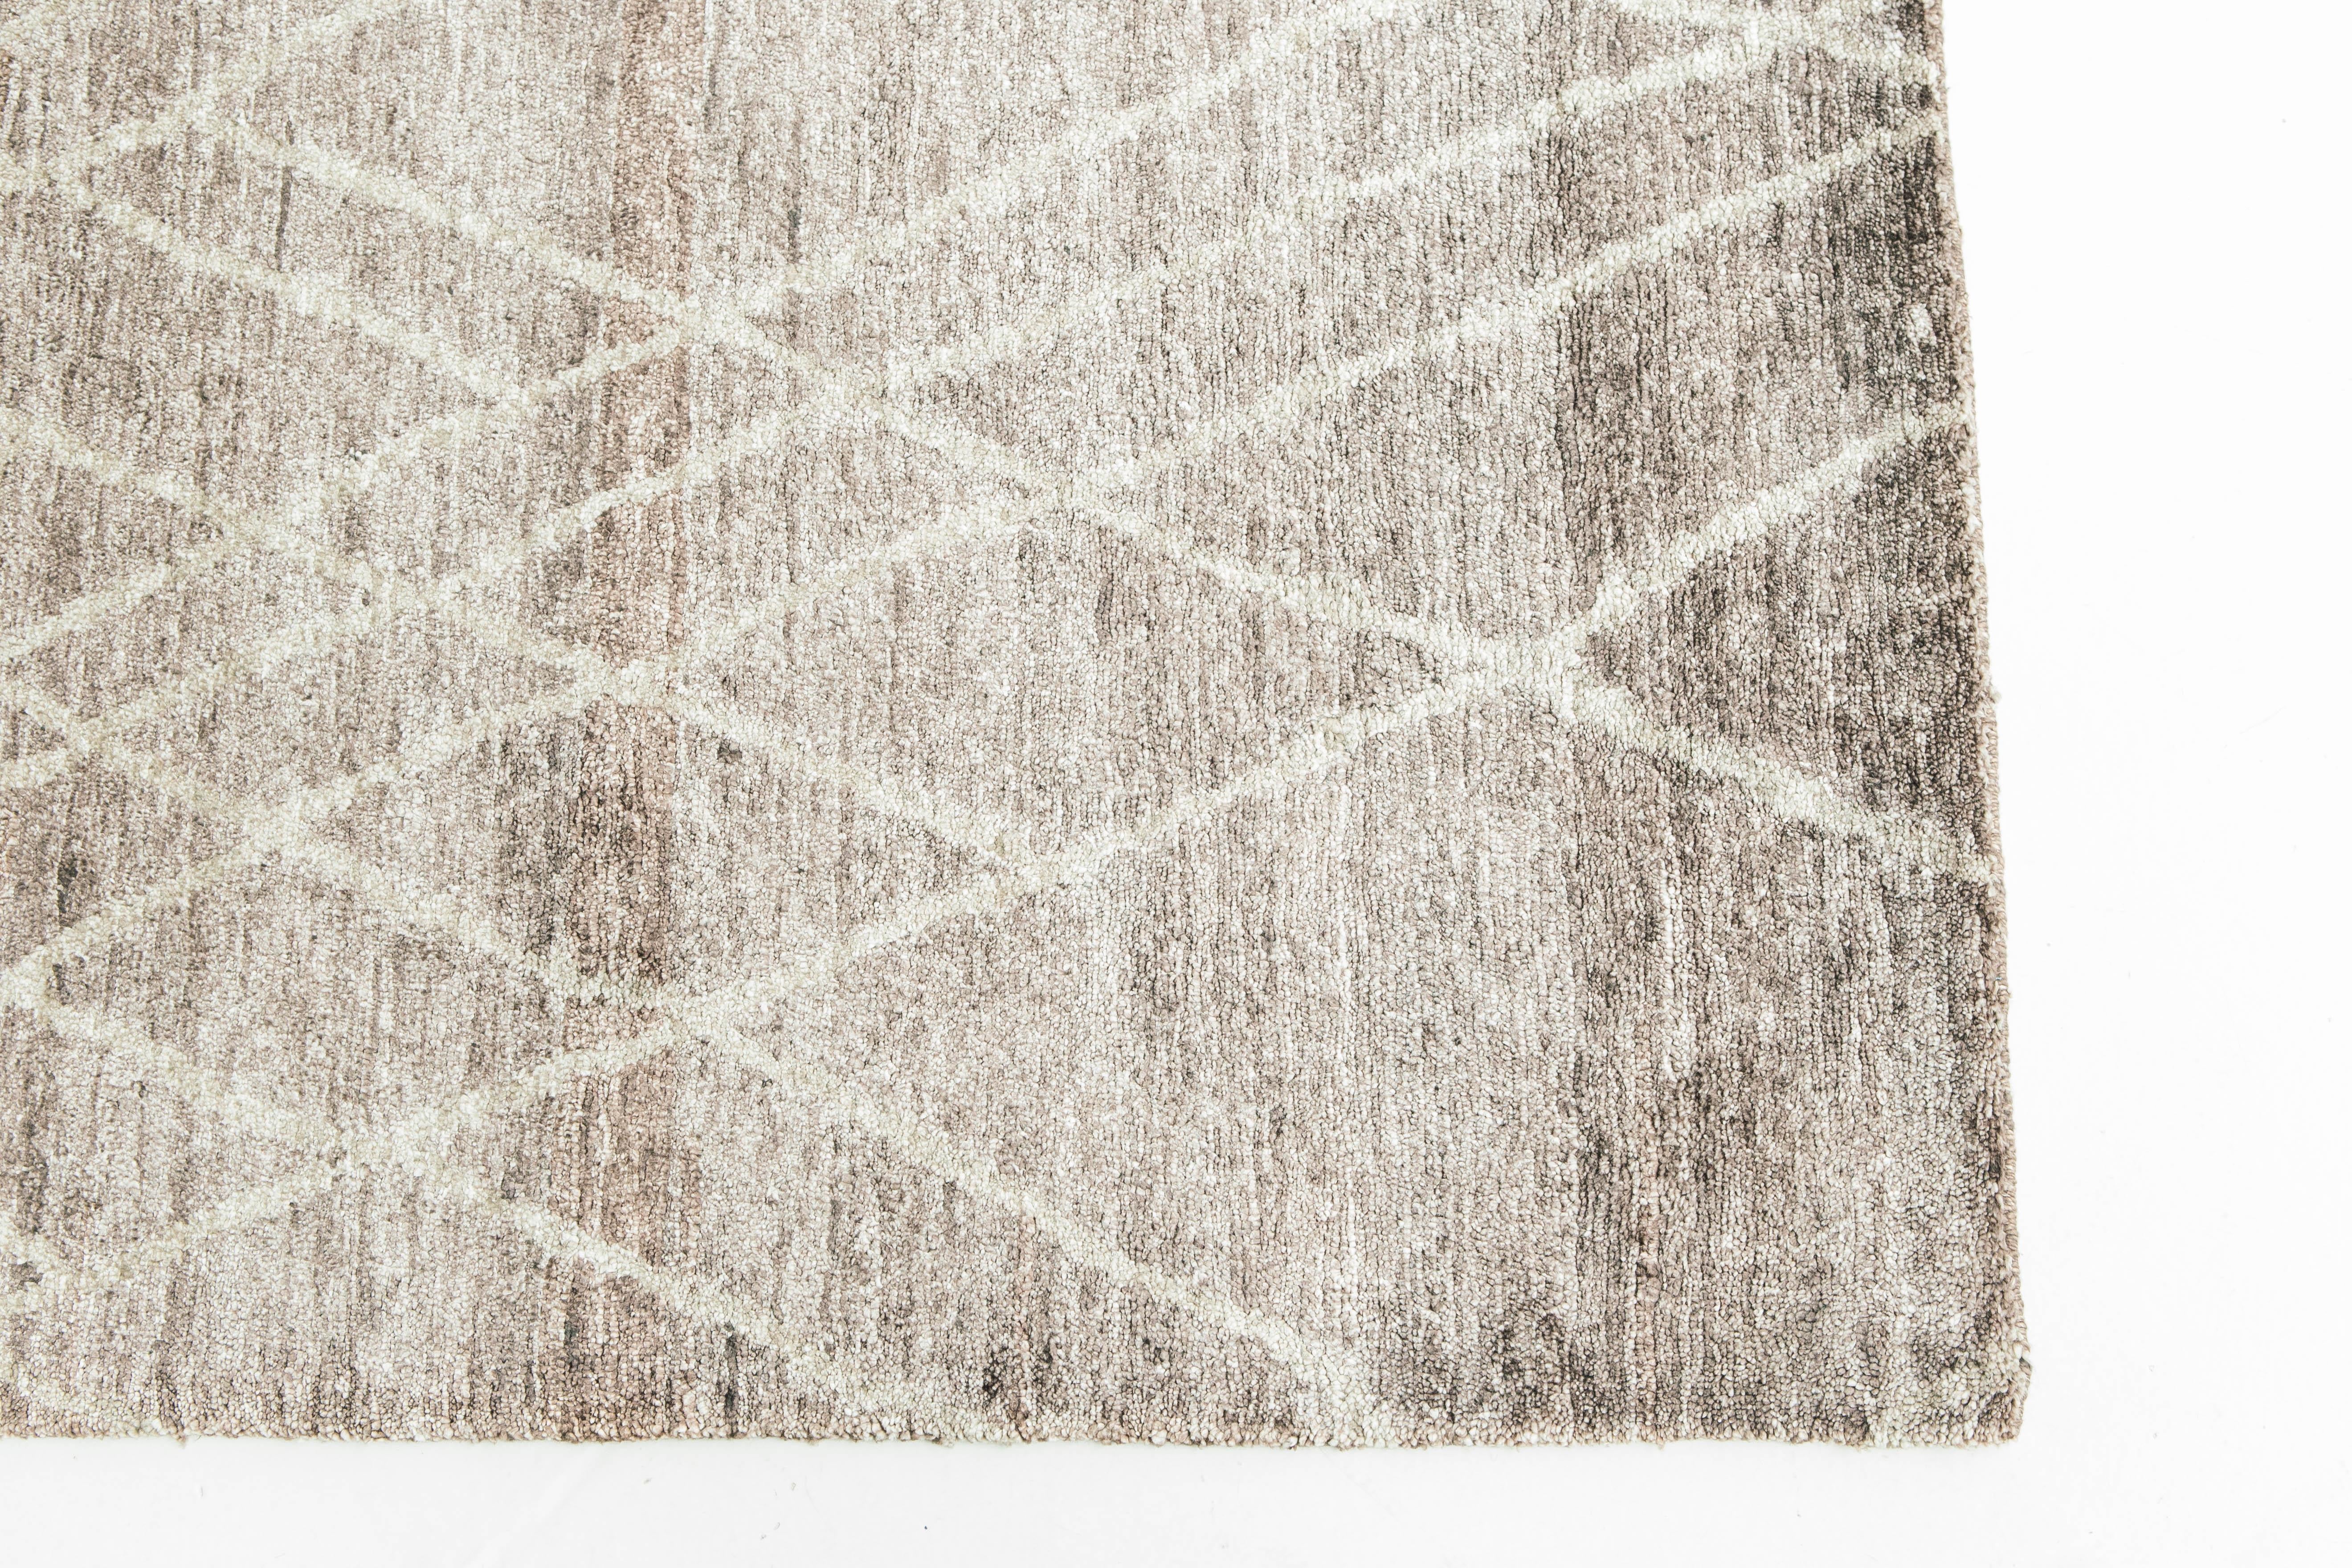 Die charakteristische Collection'S von California. Handgewebter, luxuriöser Bambus-Seidenteppich mit Motiven natürlicher Landschaftsgestaltung in Anthrazit und Silber. Haute Bohemian Collection: entworfen in Los Angeles, benannt nach den Winden, die